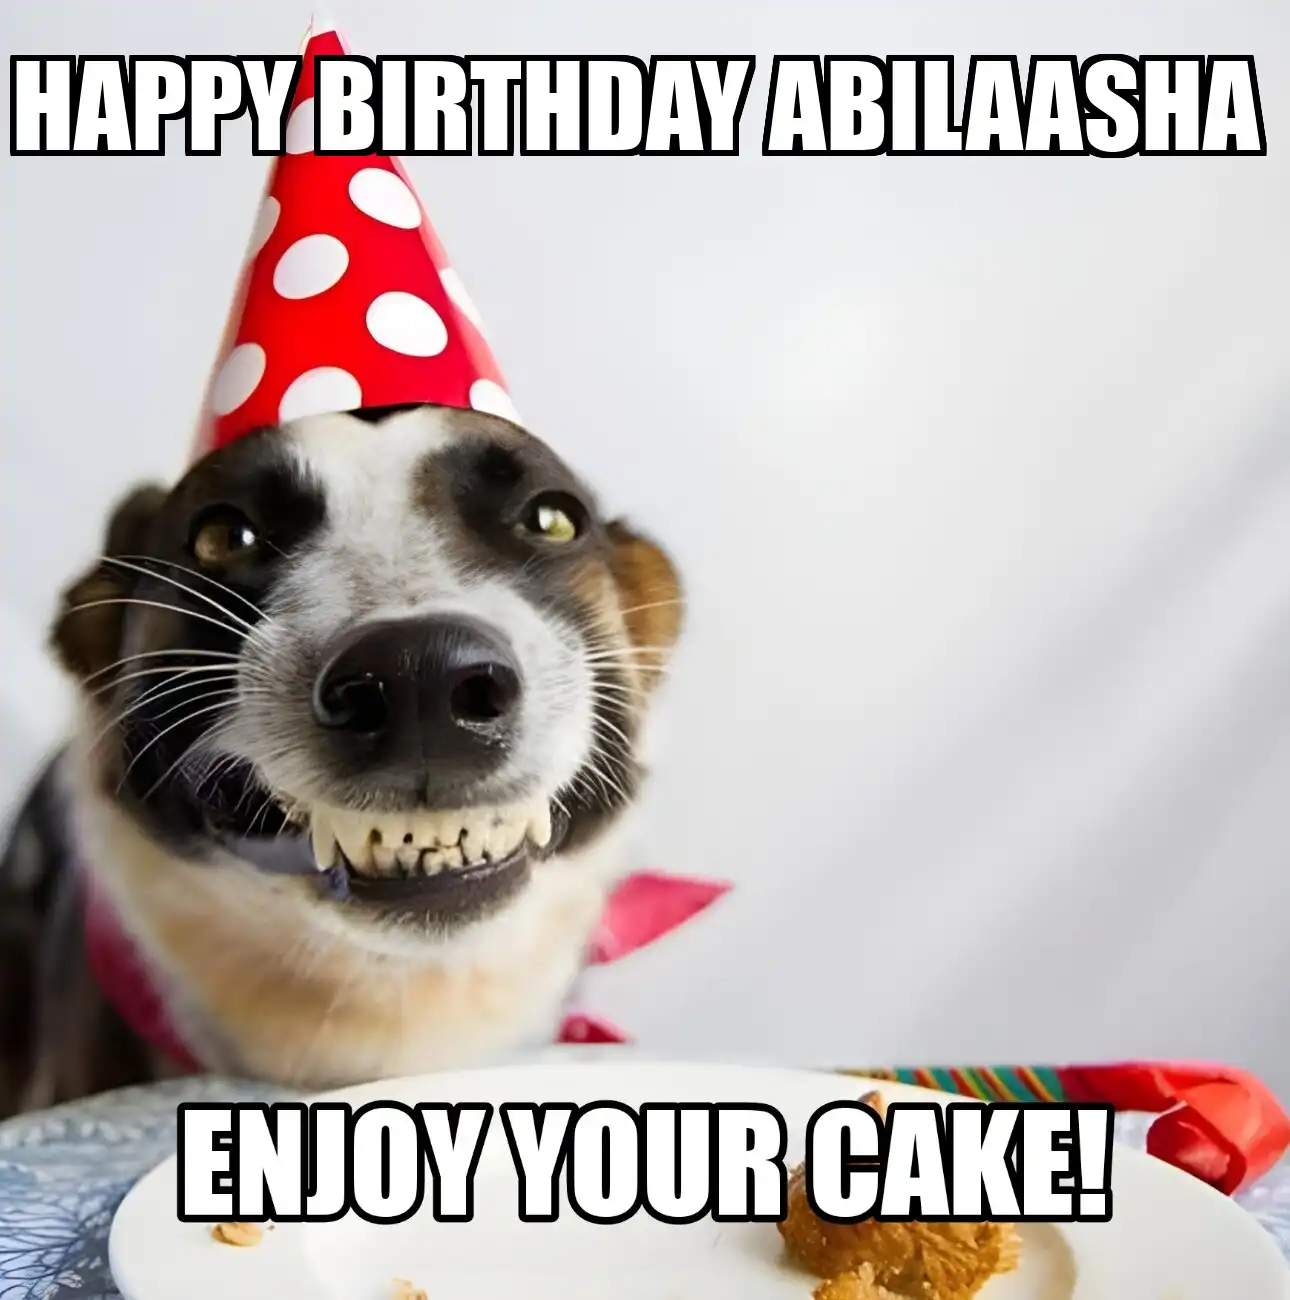 Happy Birthday Abilaasha Enjoy Your Cake Dog Meme